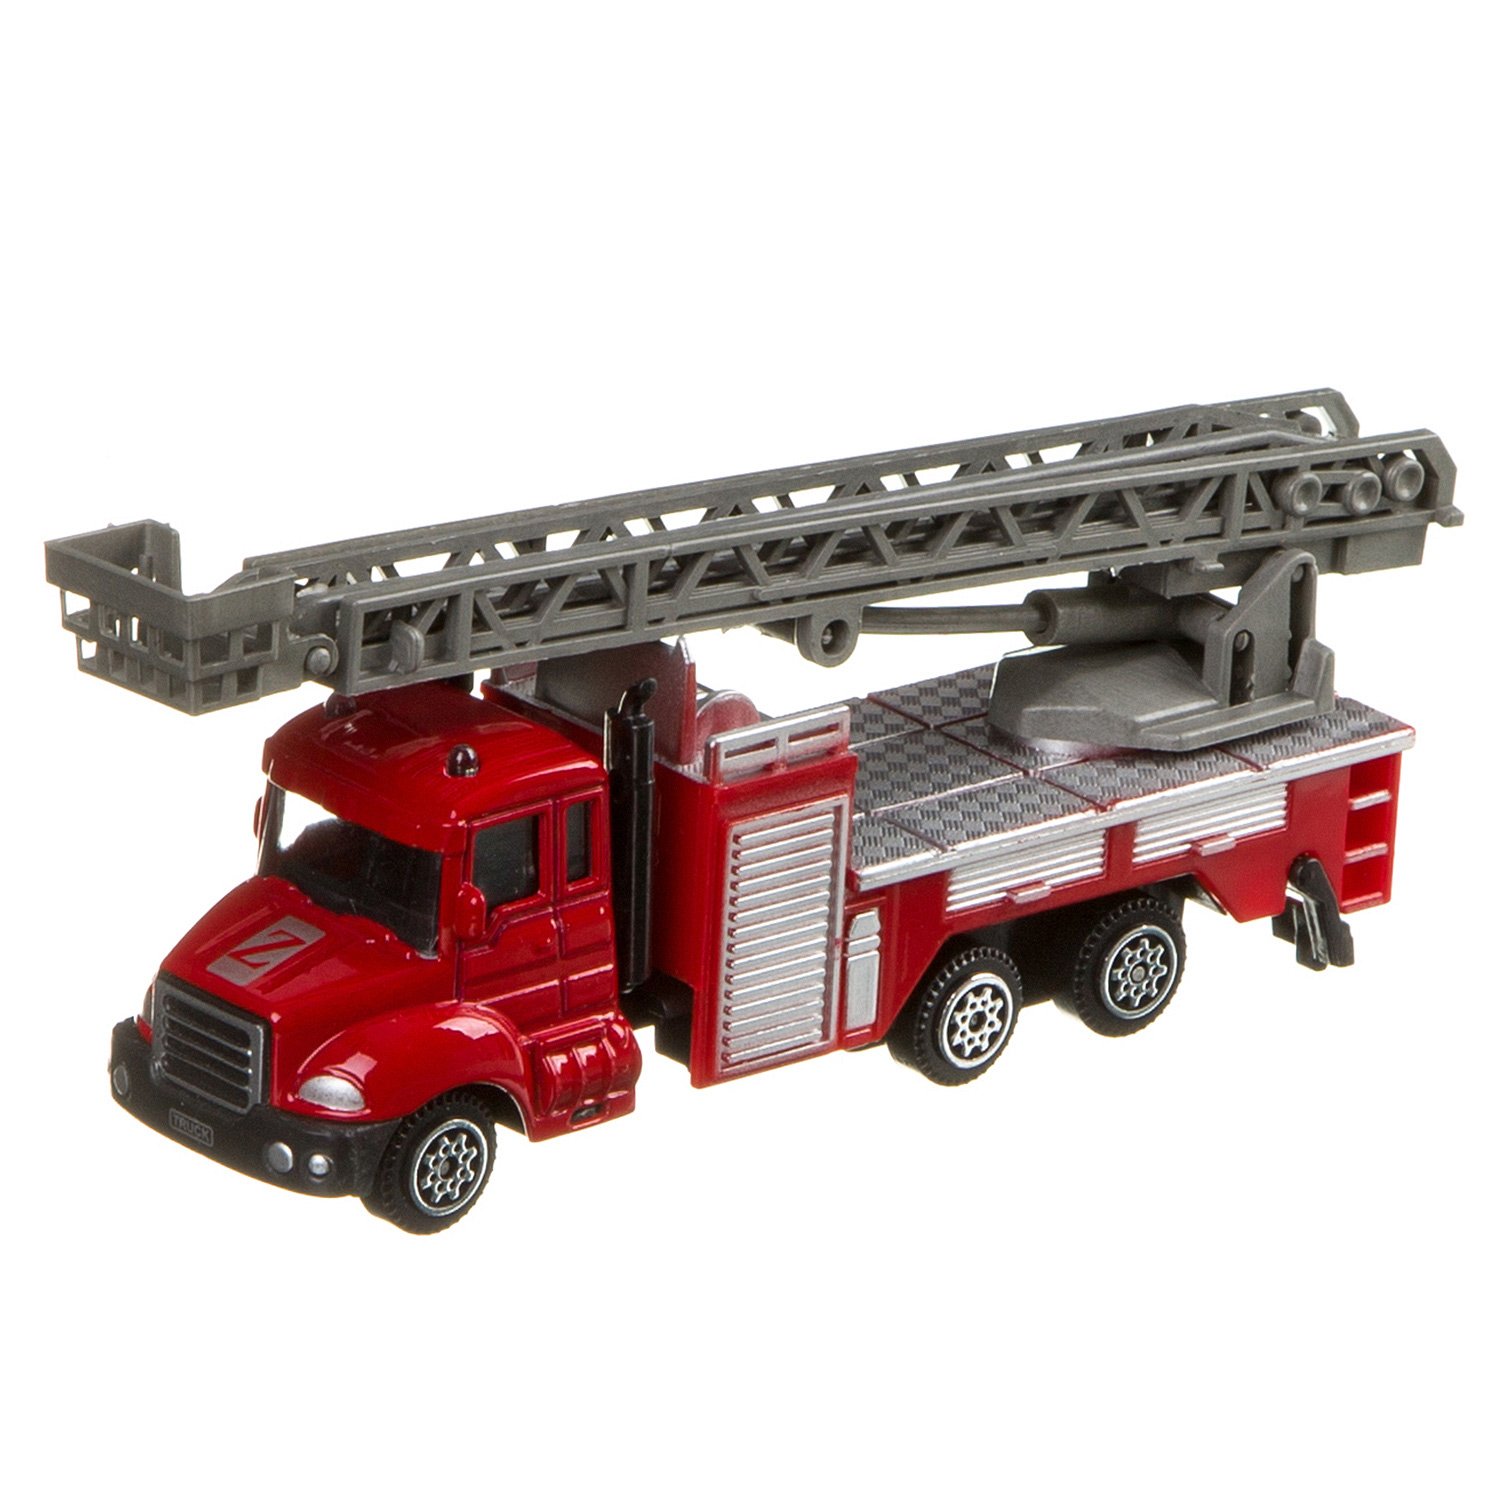 Маленькая пожарная машинка. Пожарная машина Fire Station Mobicaro. Пожарный автомобиль Donbful 1814-1c 1:64 18 см. Mobicaro пожарная машина wy851a.